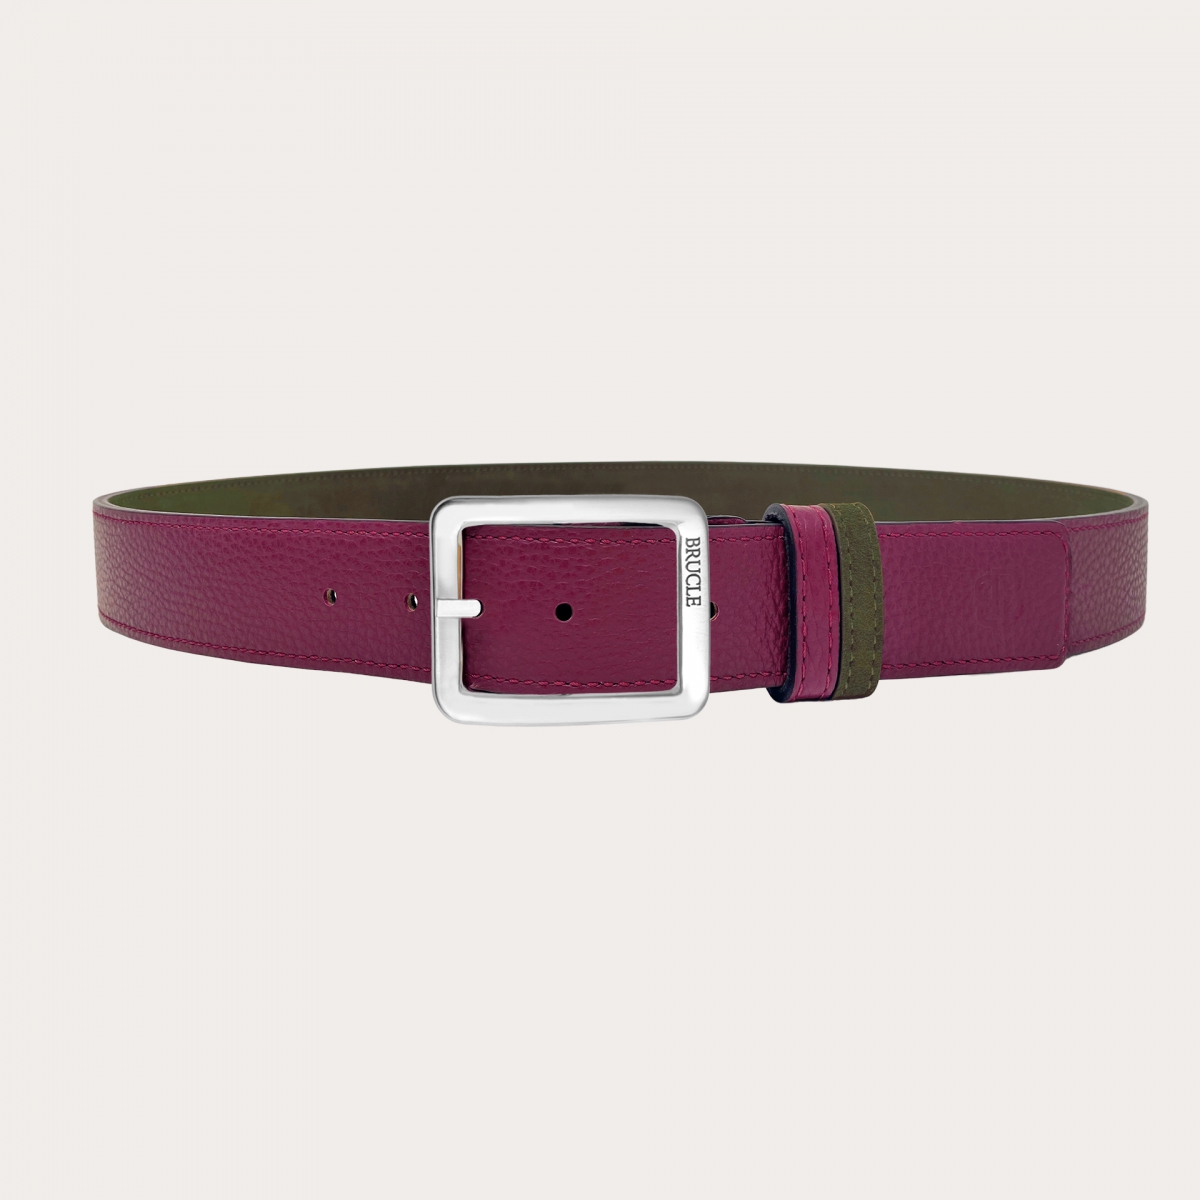 Zimtstern dark violet suede leather women belt size S/M 39”x1.3 “